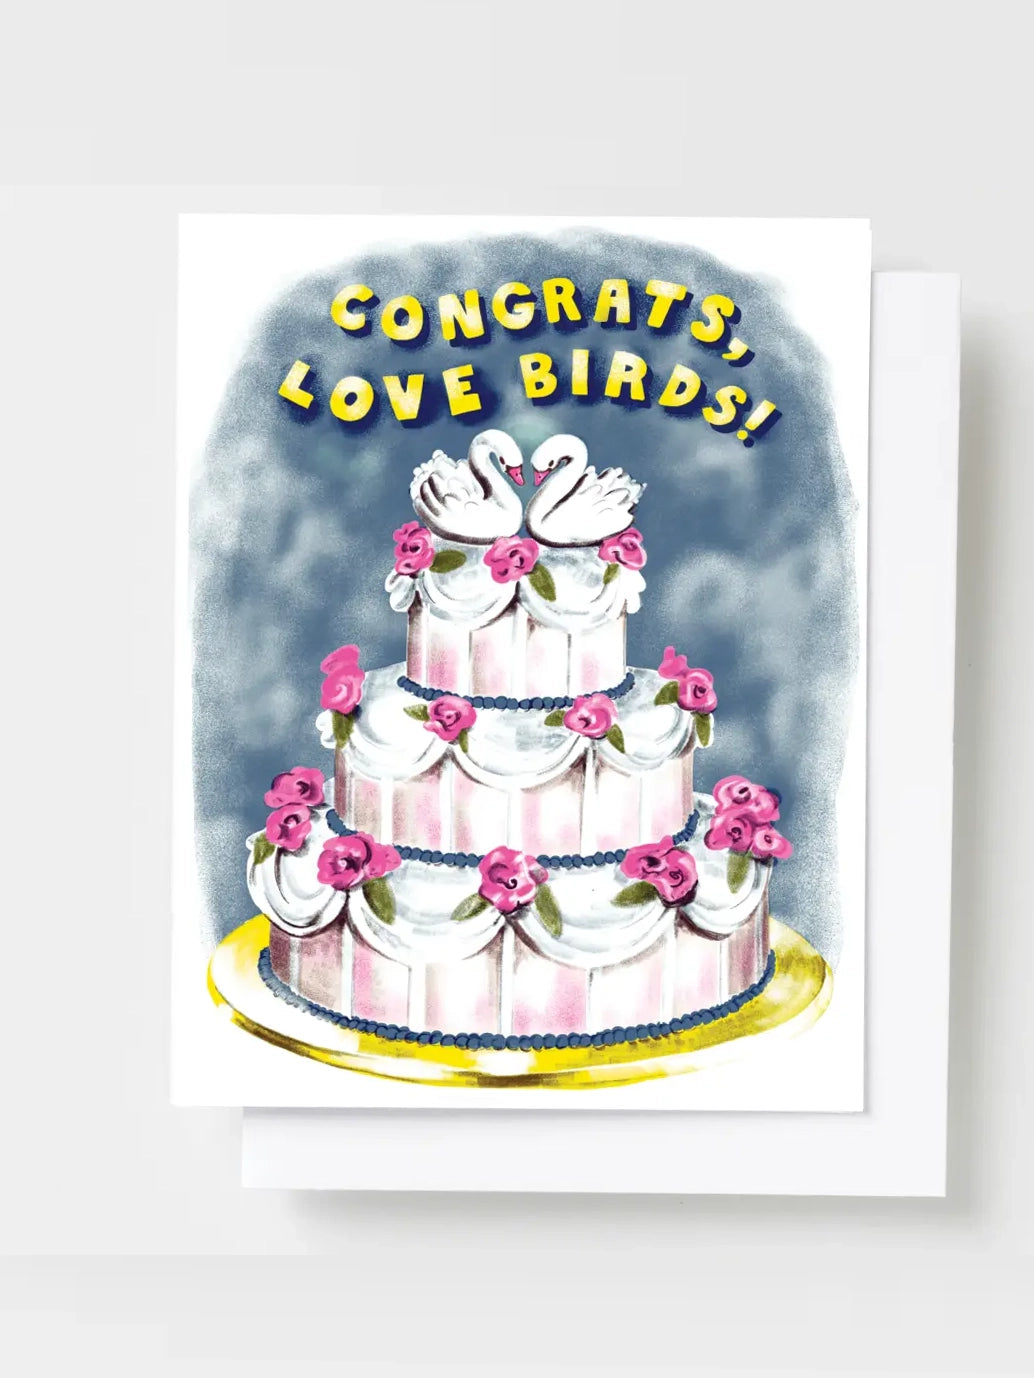 Congrats, Love Birds Card